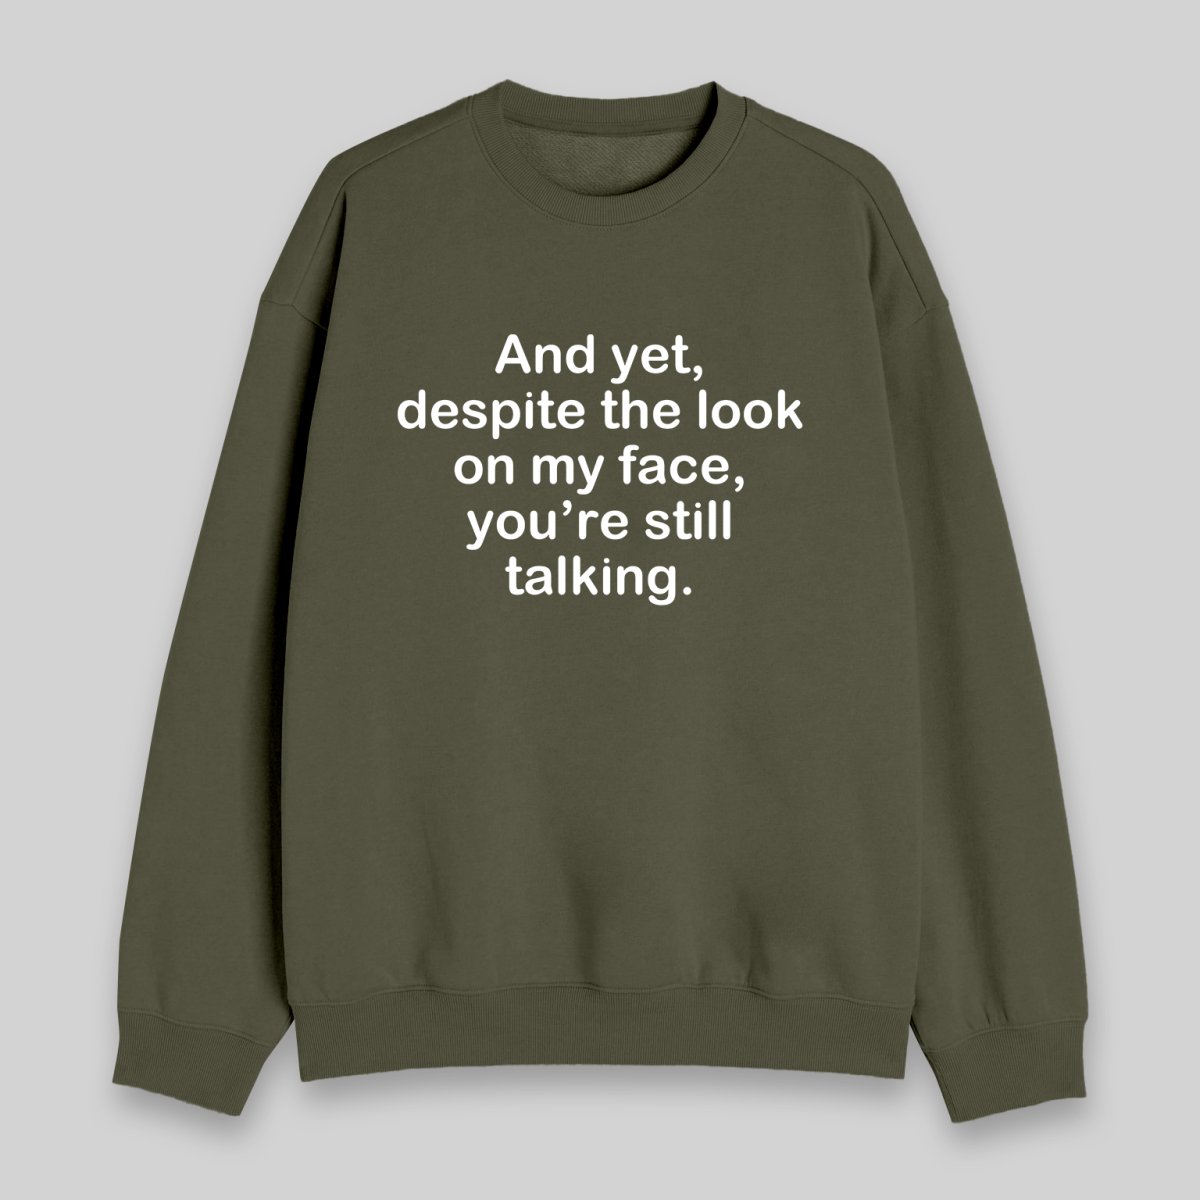 Funny Words Sweatshirt - Geeksoutfit